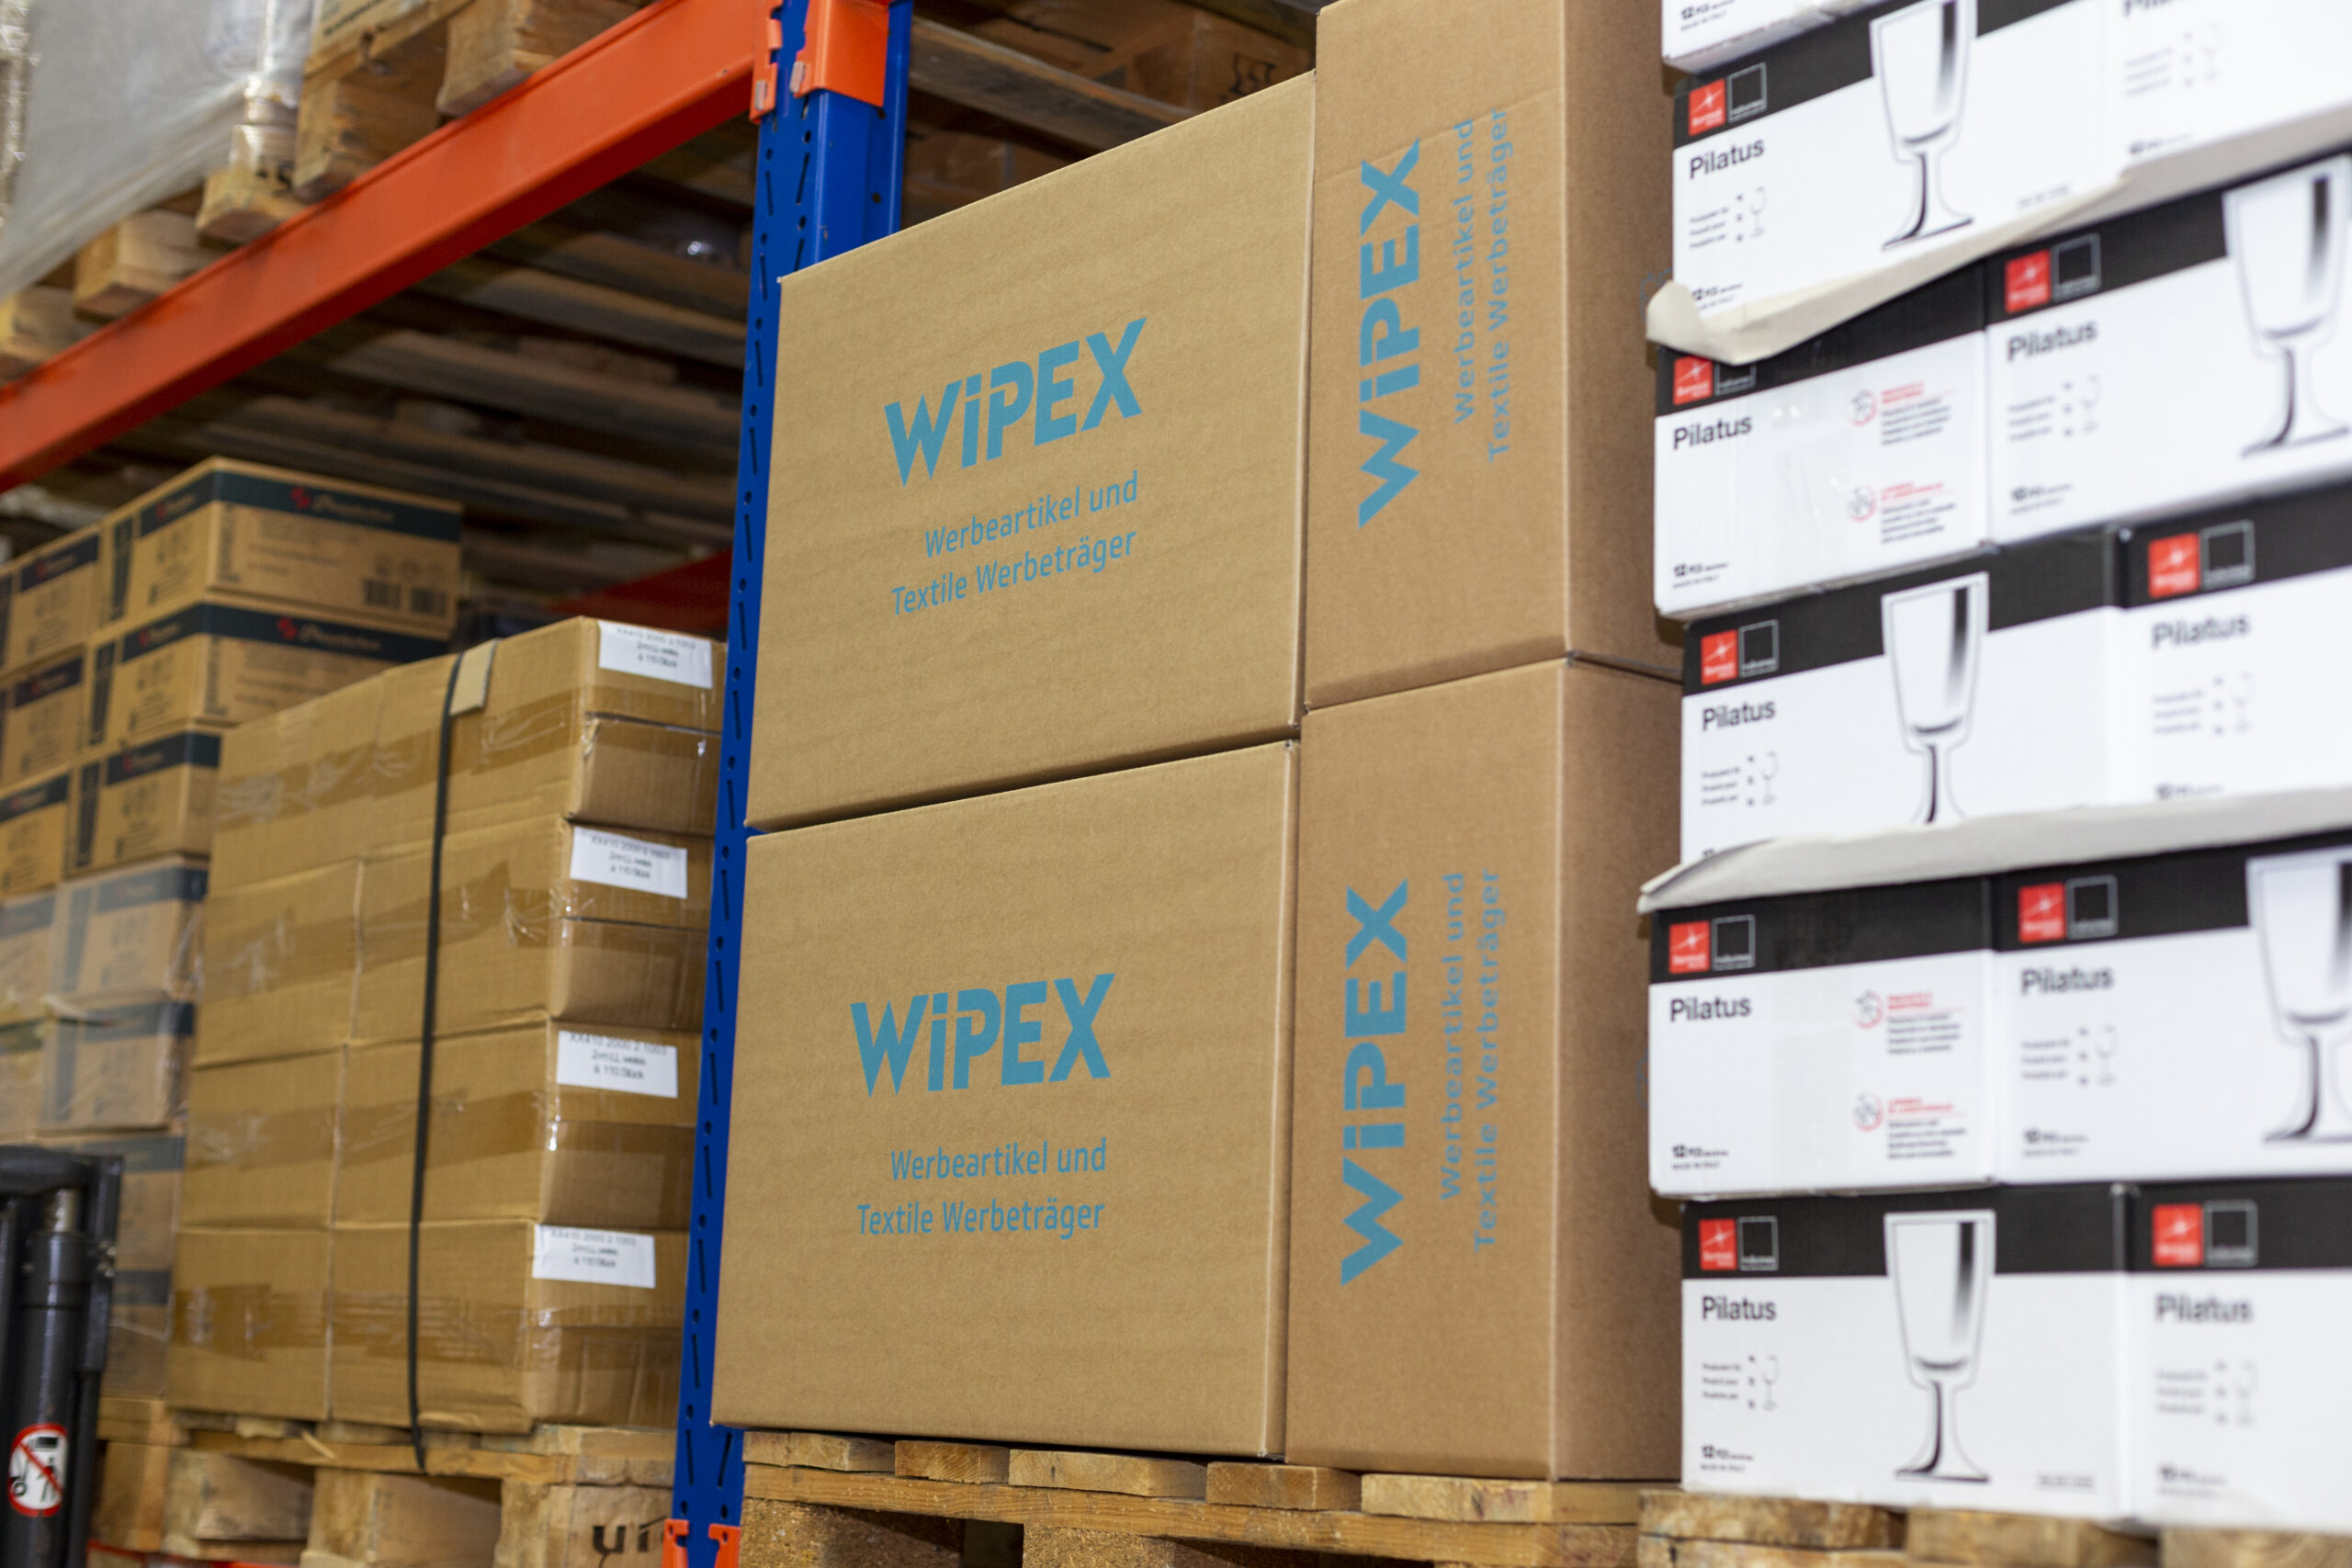 Über Wipex - WIPEX Werbemittel AG aus Schaffhausen, Schweiz